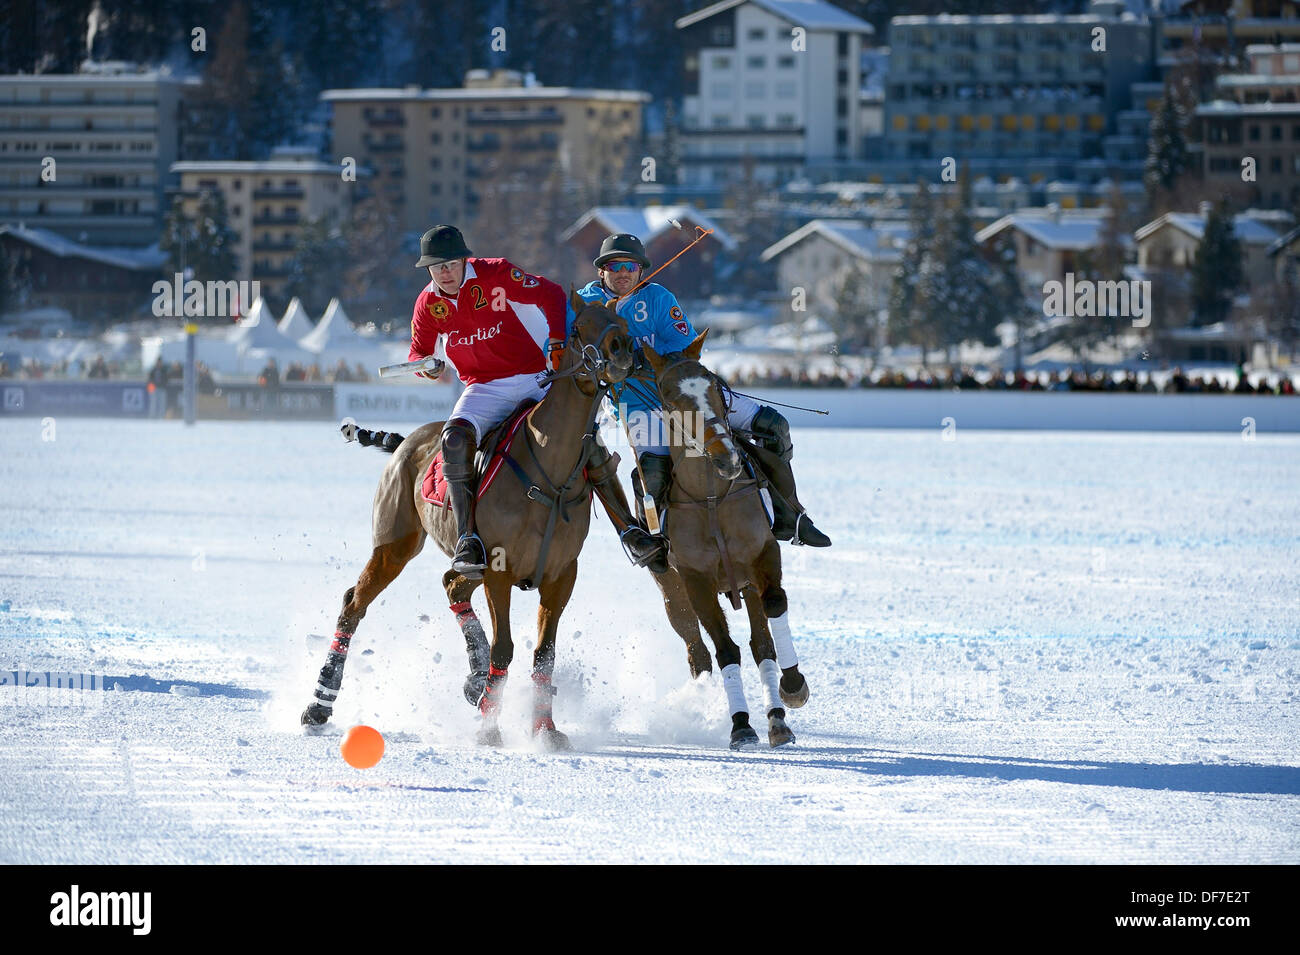 Polo tournament, 28th St. Moritz Polo World Cup on Snow on the frozen Lake St. Moritz, Engadin, Graubünden, Switzerland Stock Photo